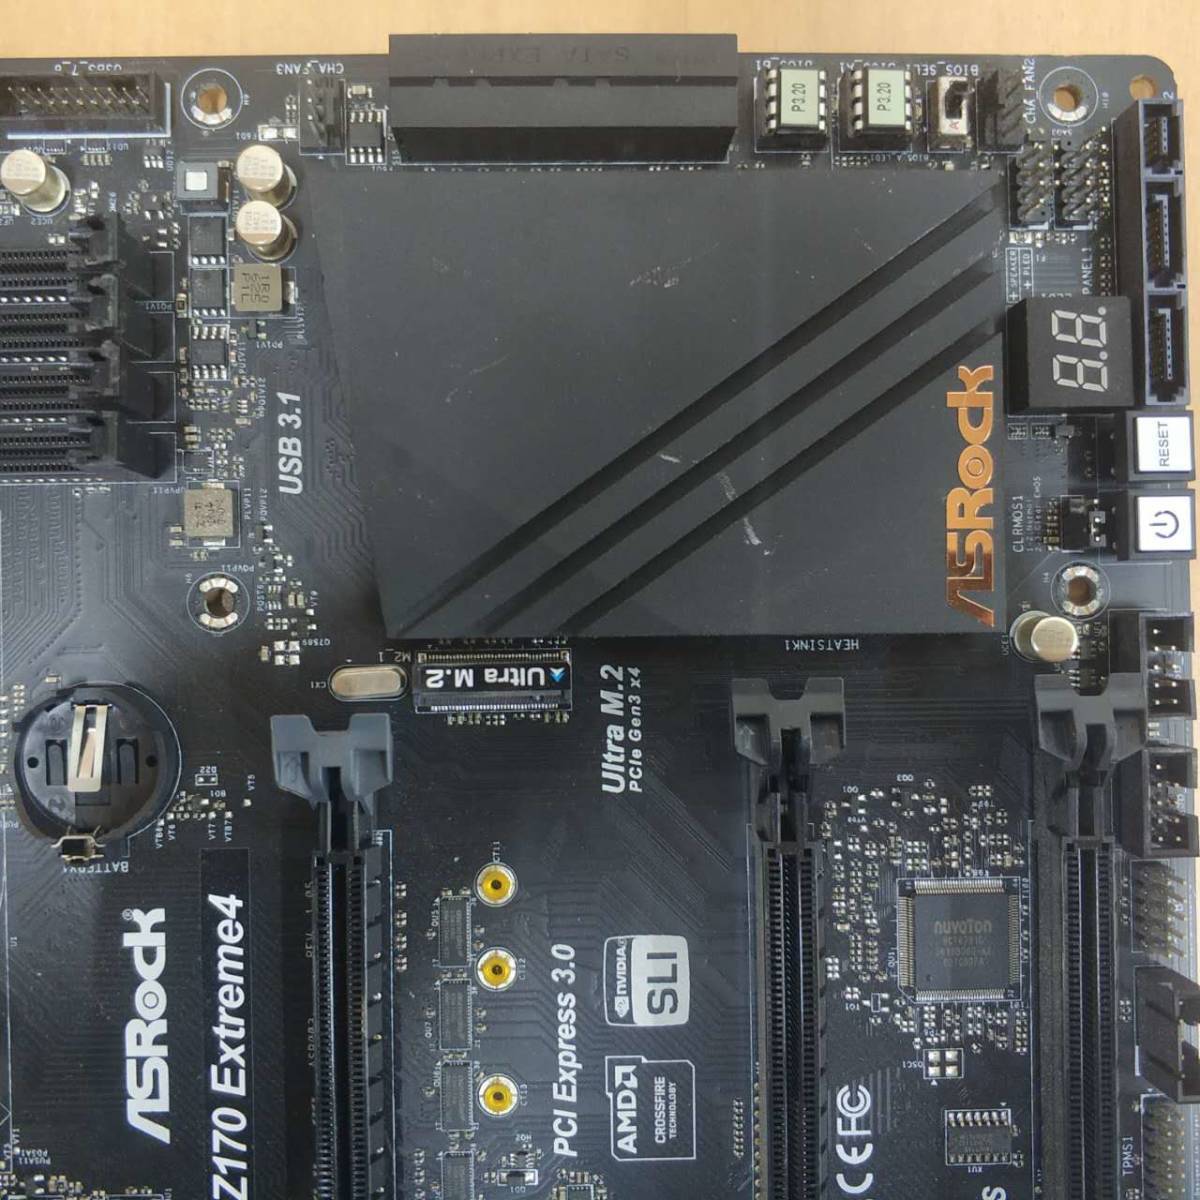 ASROCK Z170 EXTREME4//ATX материнская плата / (LGA1151) INTEL no. 6*7 поколение CPU соответствует PC детали DIY ремонт материал * электризация,BIOS вставание подтверждено 